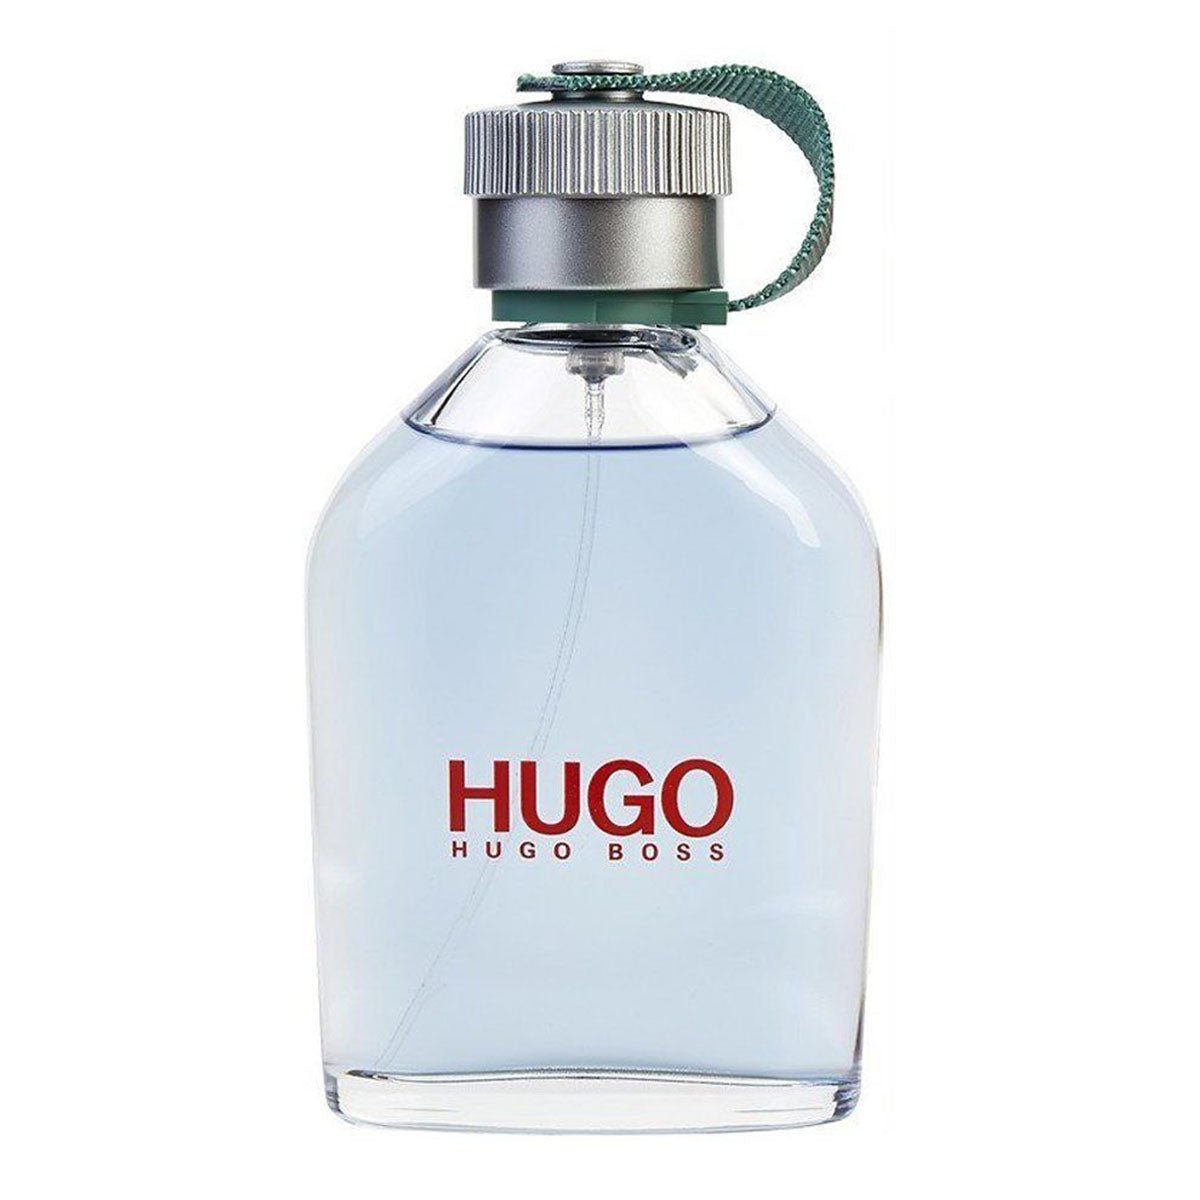 Hugo Boss Man Edt 200ml-Perfume - AllurebeautypkHugo Boss Man Edt 200ml-Perfume